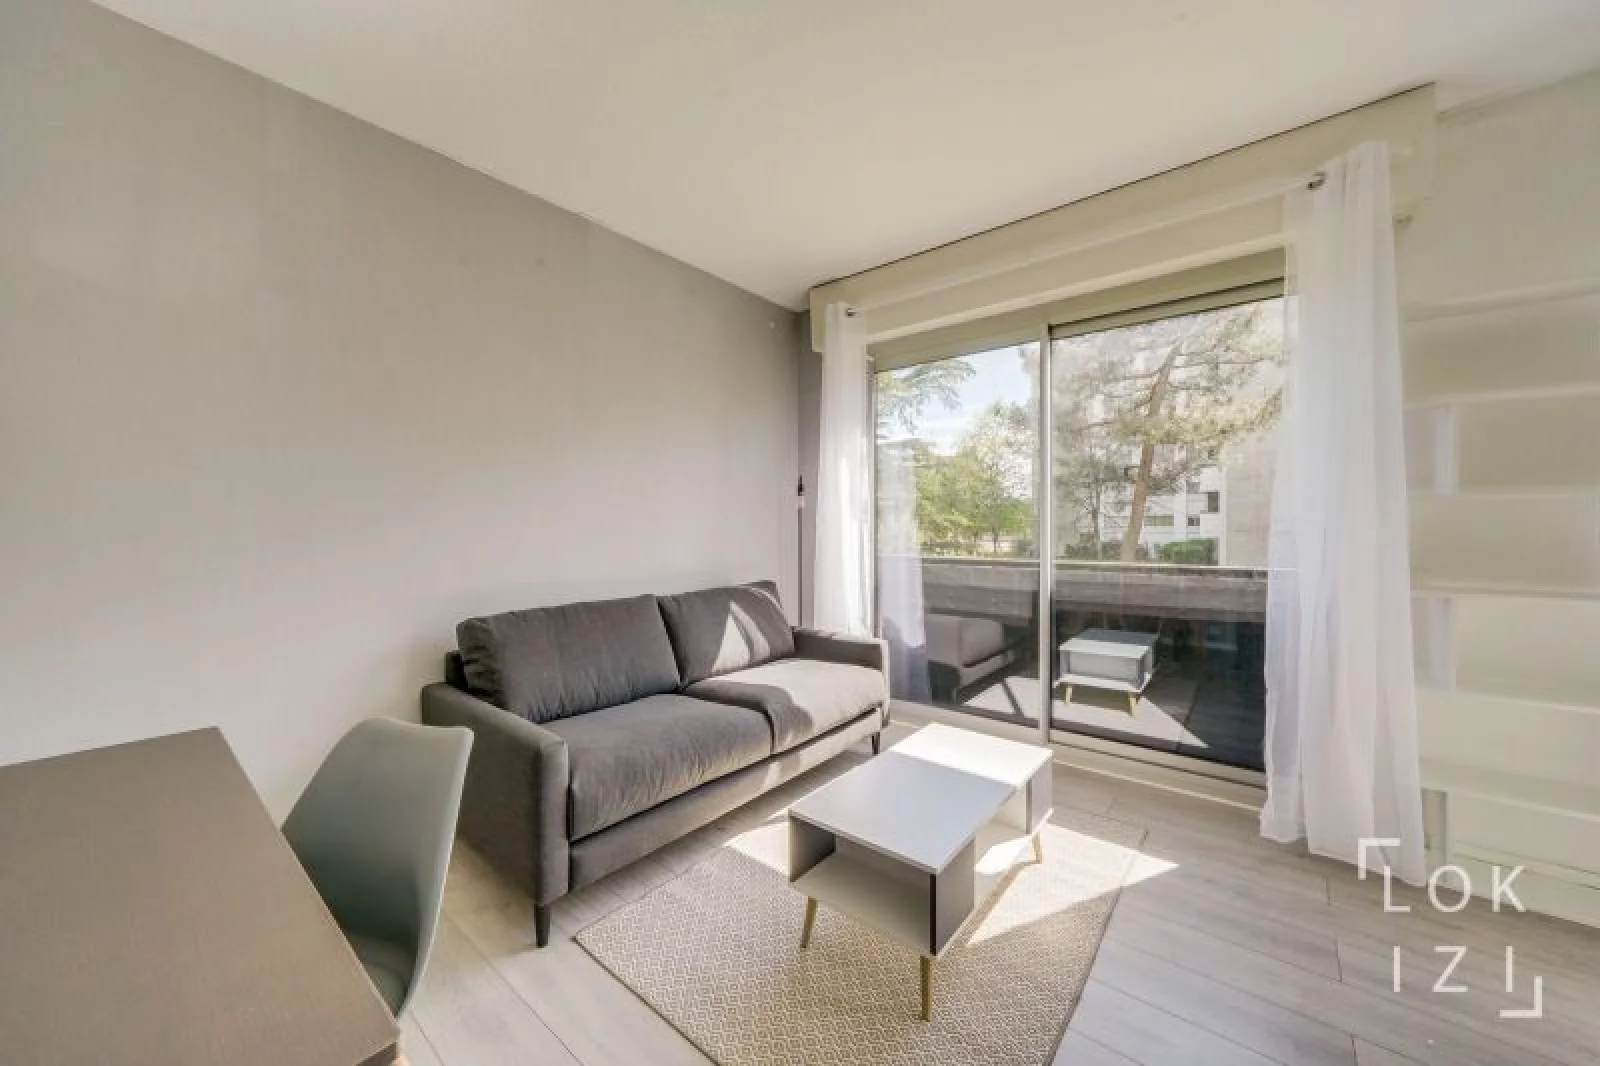 Location appartement meublé T1bis de 29m² (Bordeaux - Caudéran)